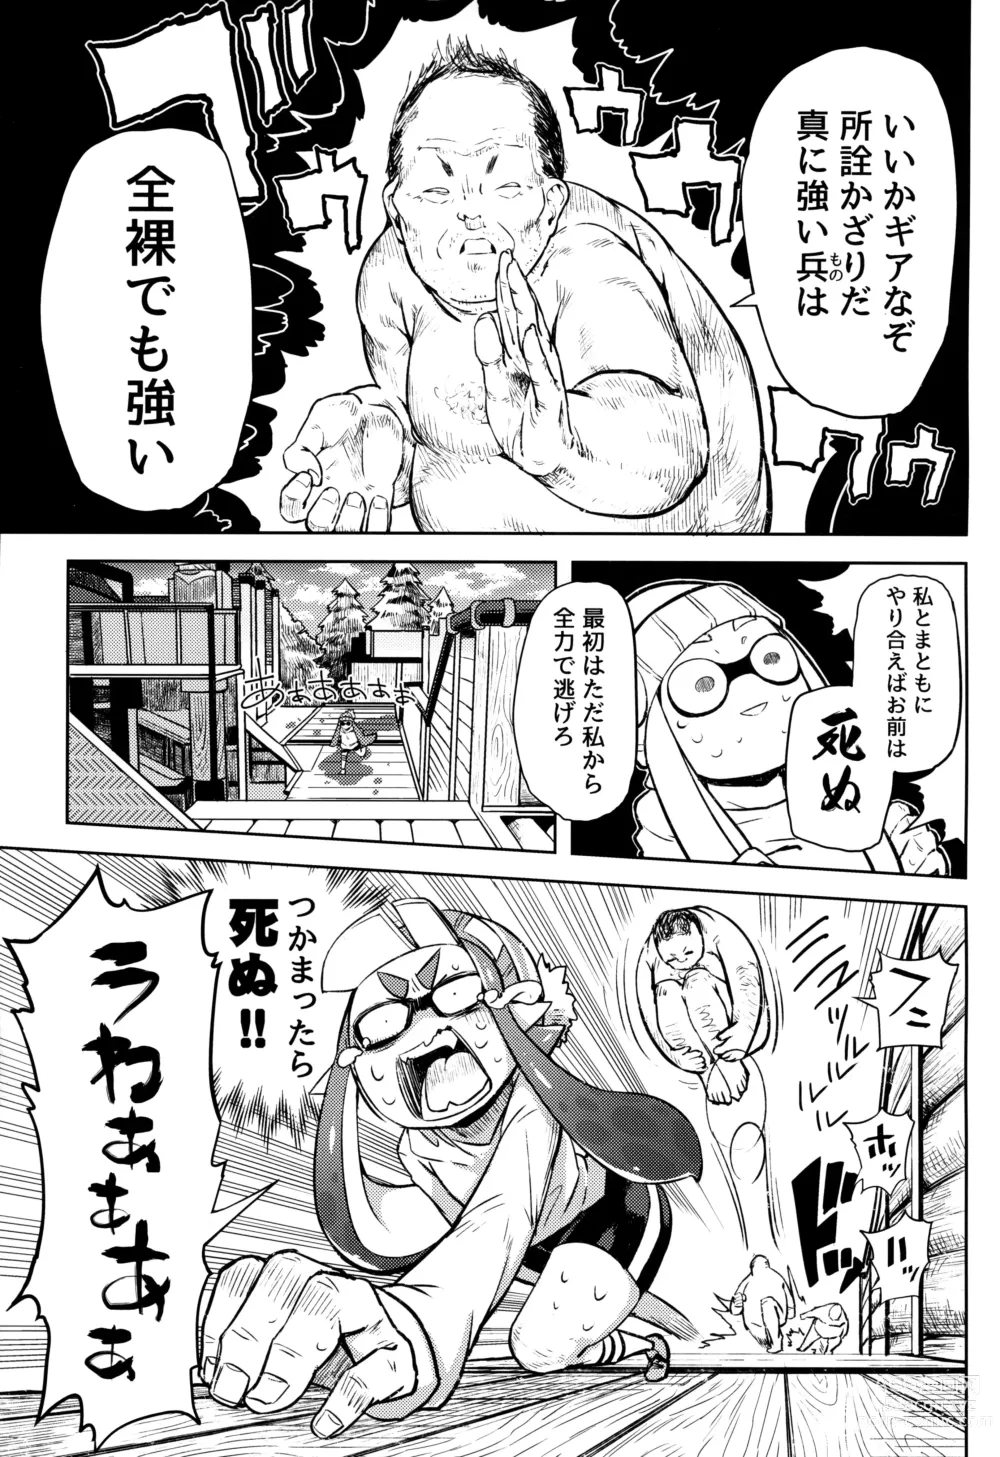 Page 6 of doujinshi Ero Ika Yori Ai o Komete